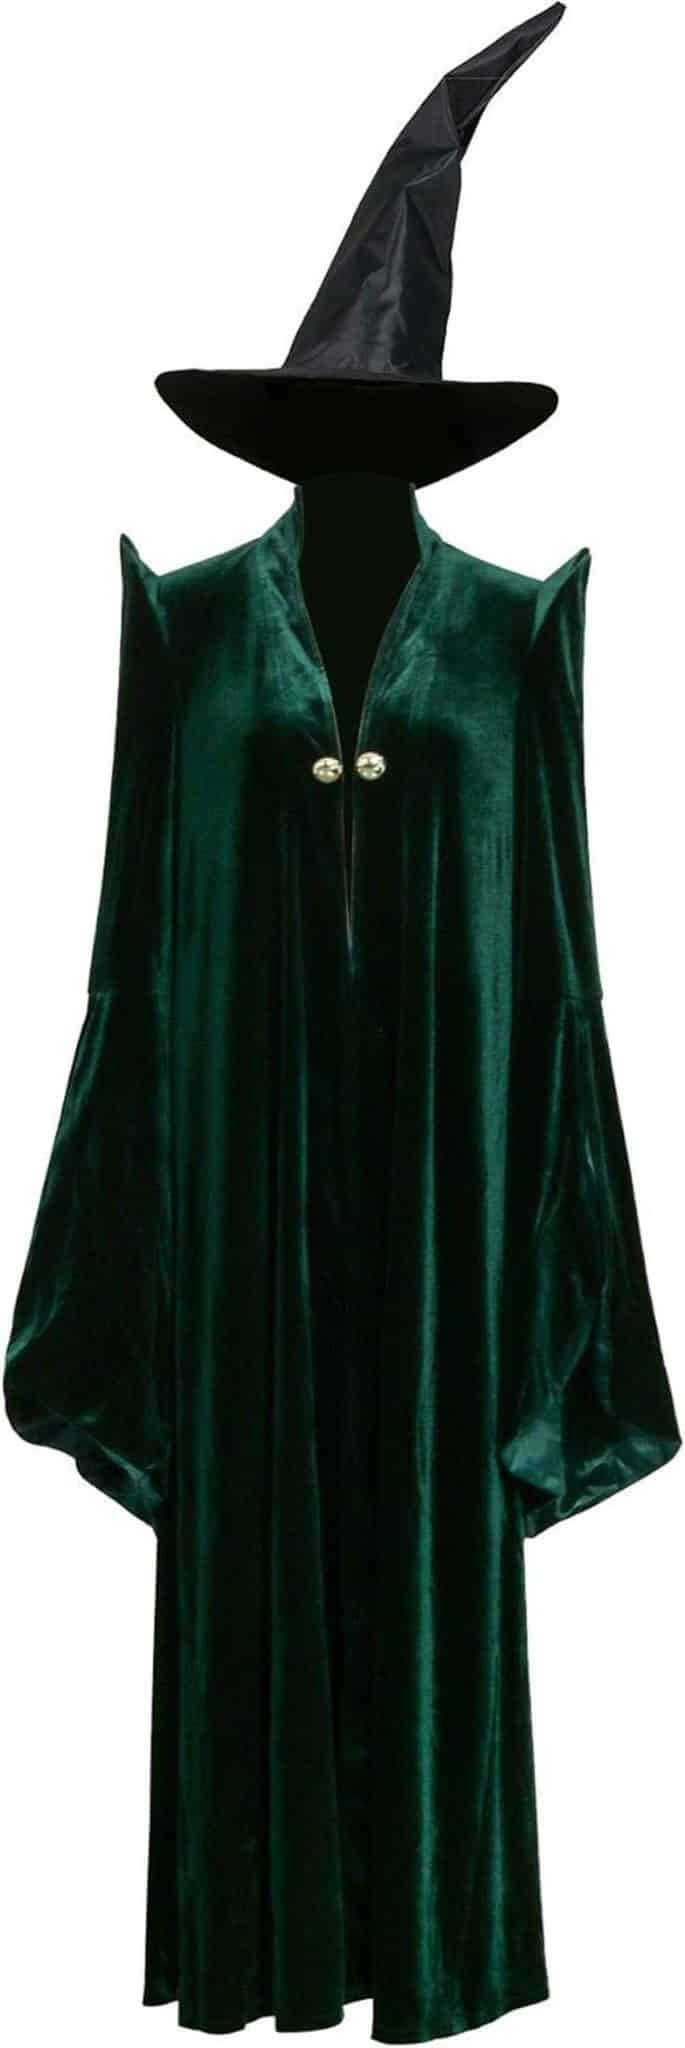 Test costume McGonagall : cape magique velours & chapeau (M)